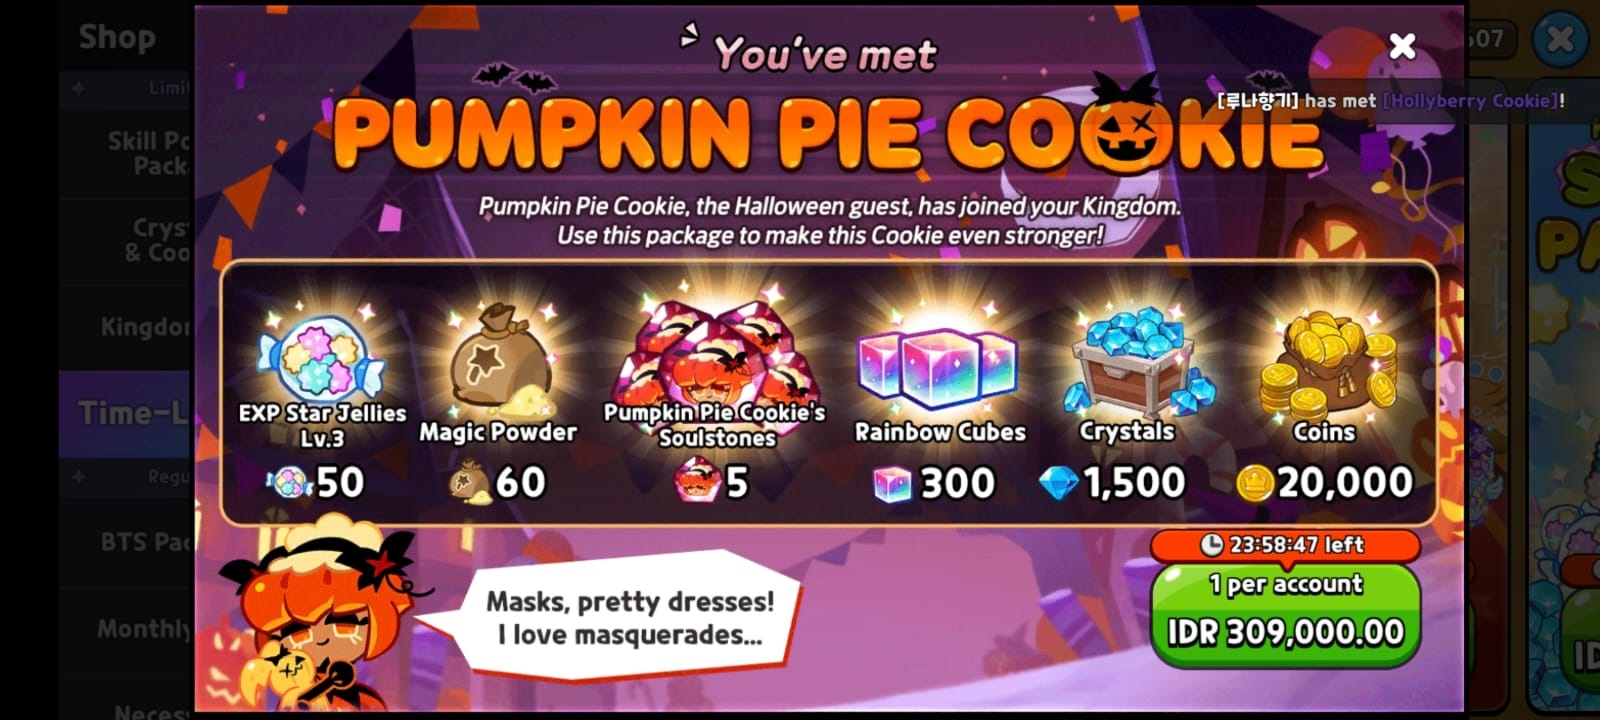 Daftar Tier Cookie Run Kingdom, Cookie Terbaik Untuk Melawan Cake Monster Di November 2022